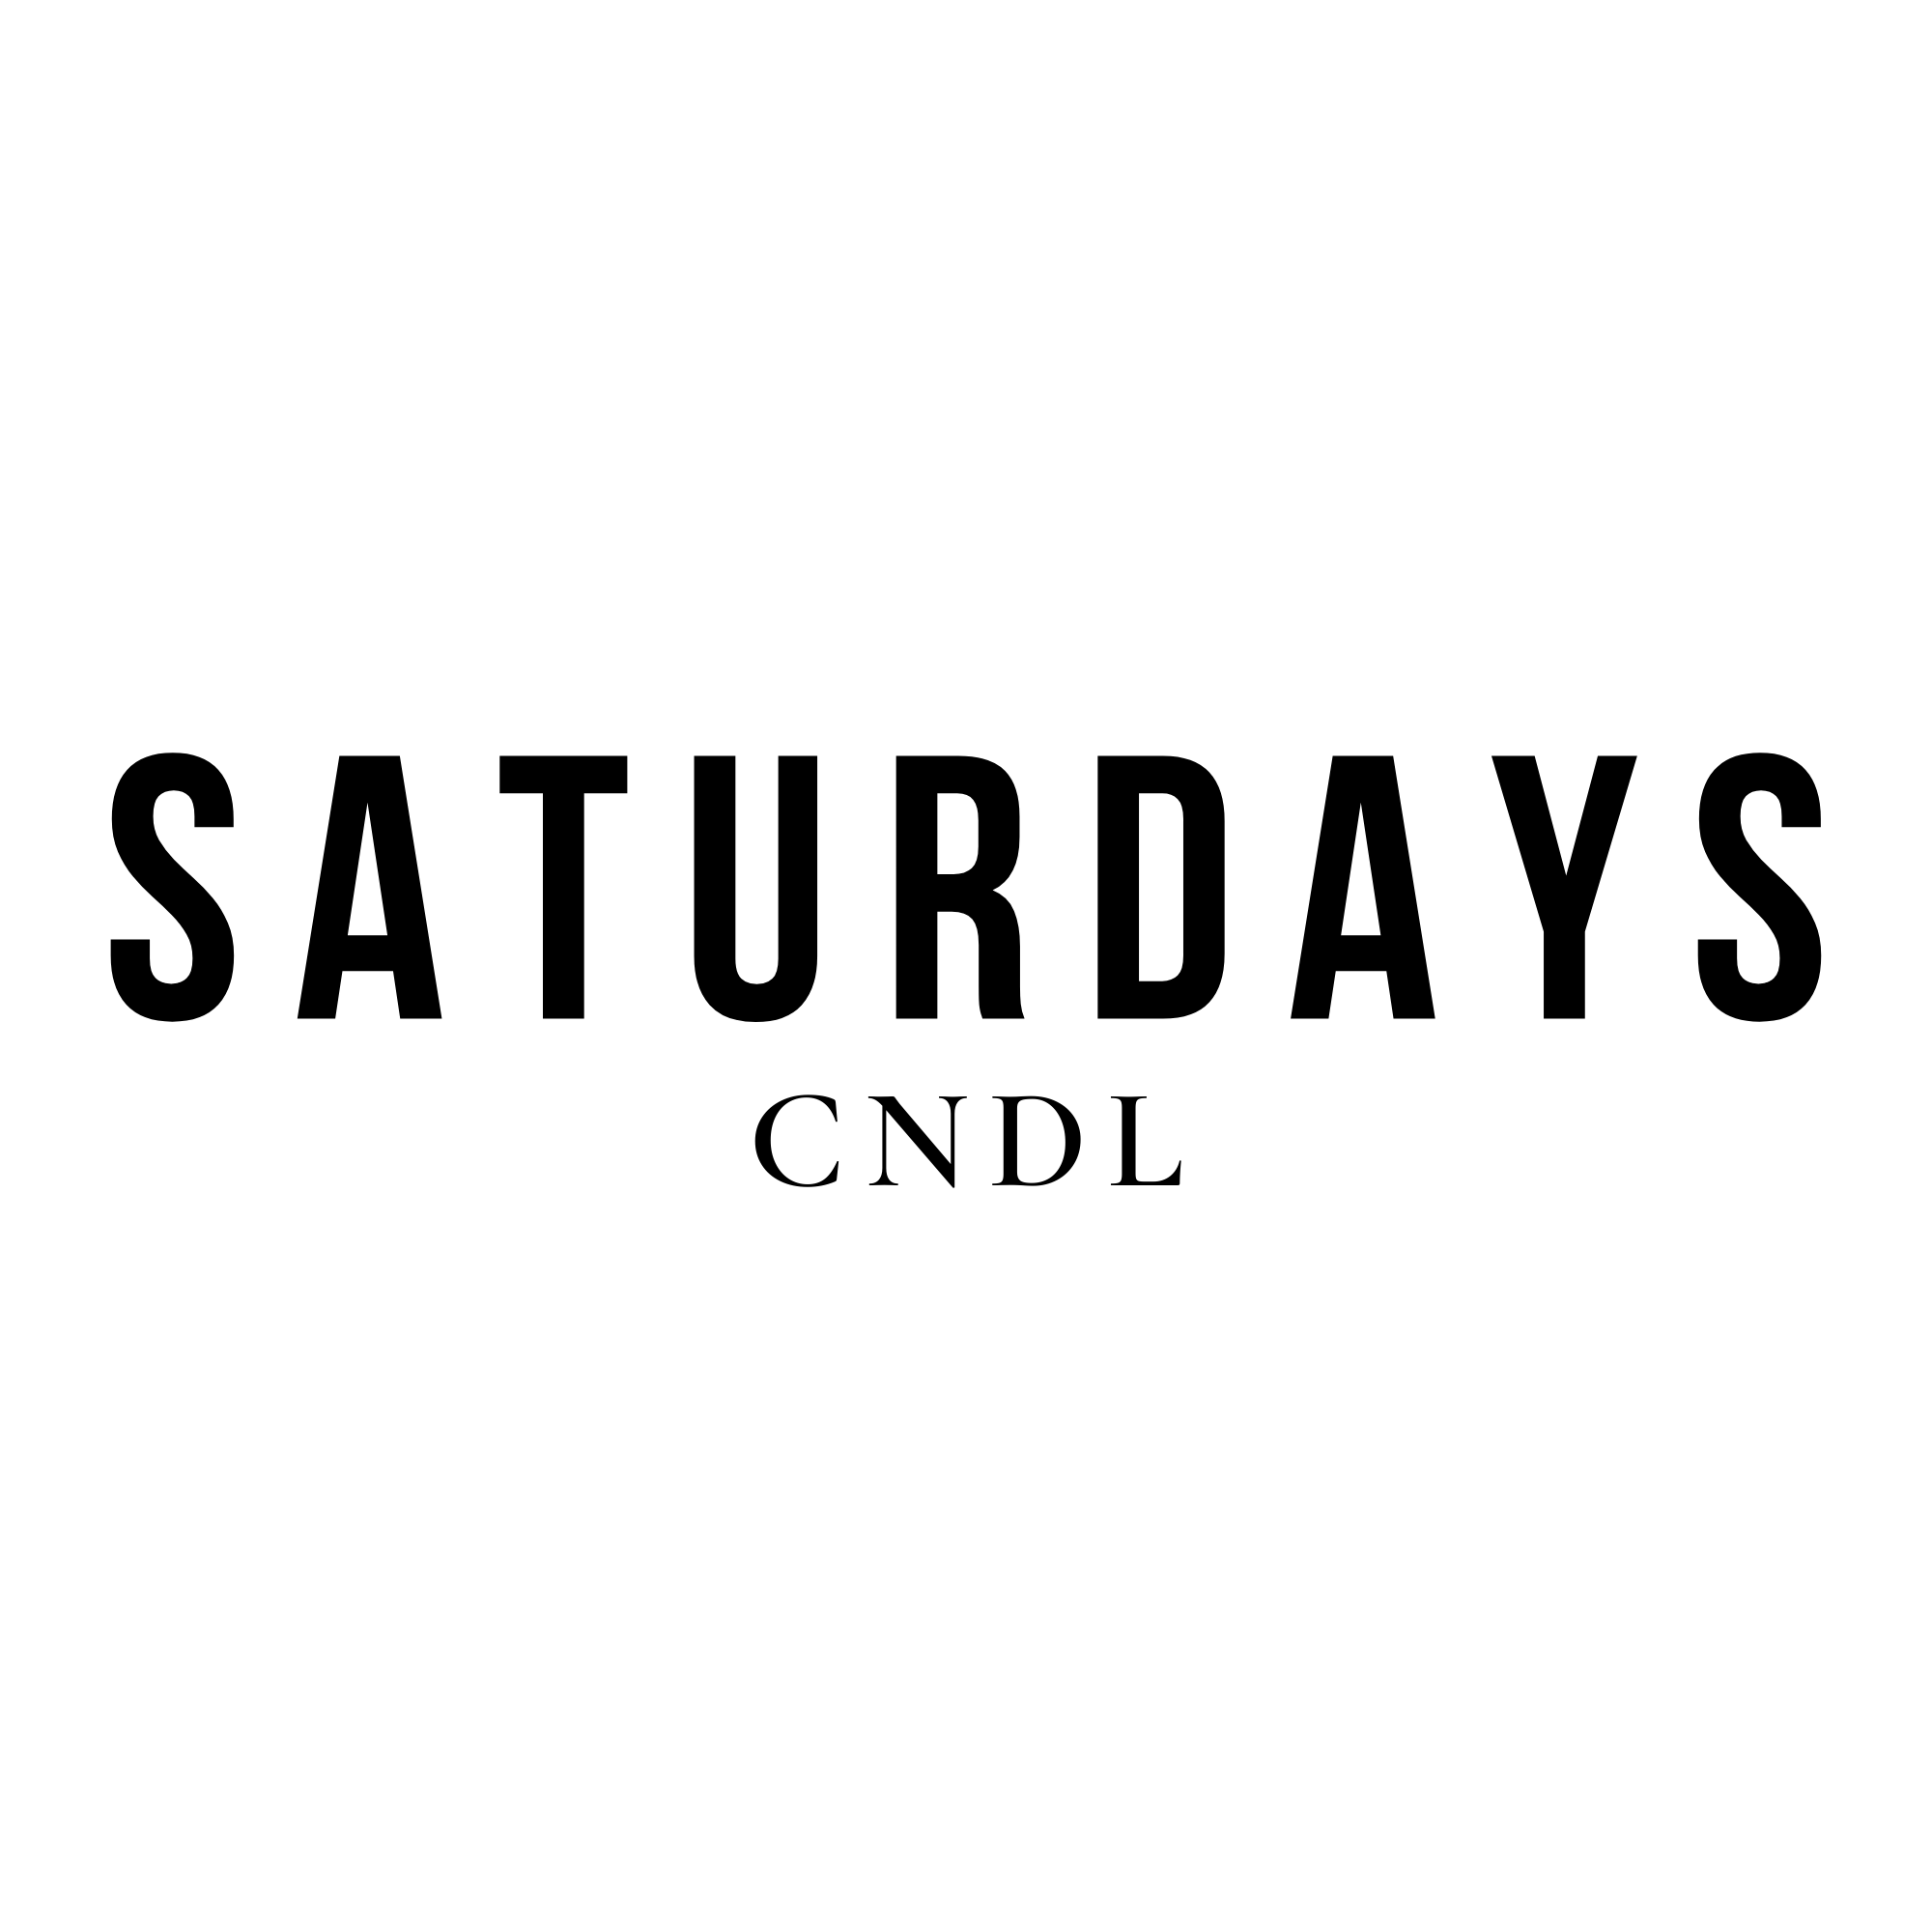 Saturdays cndl